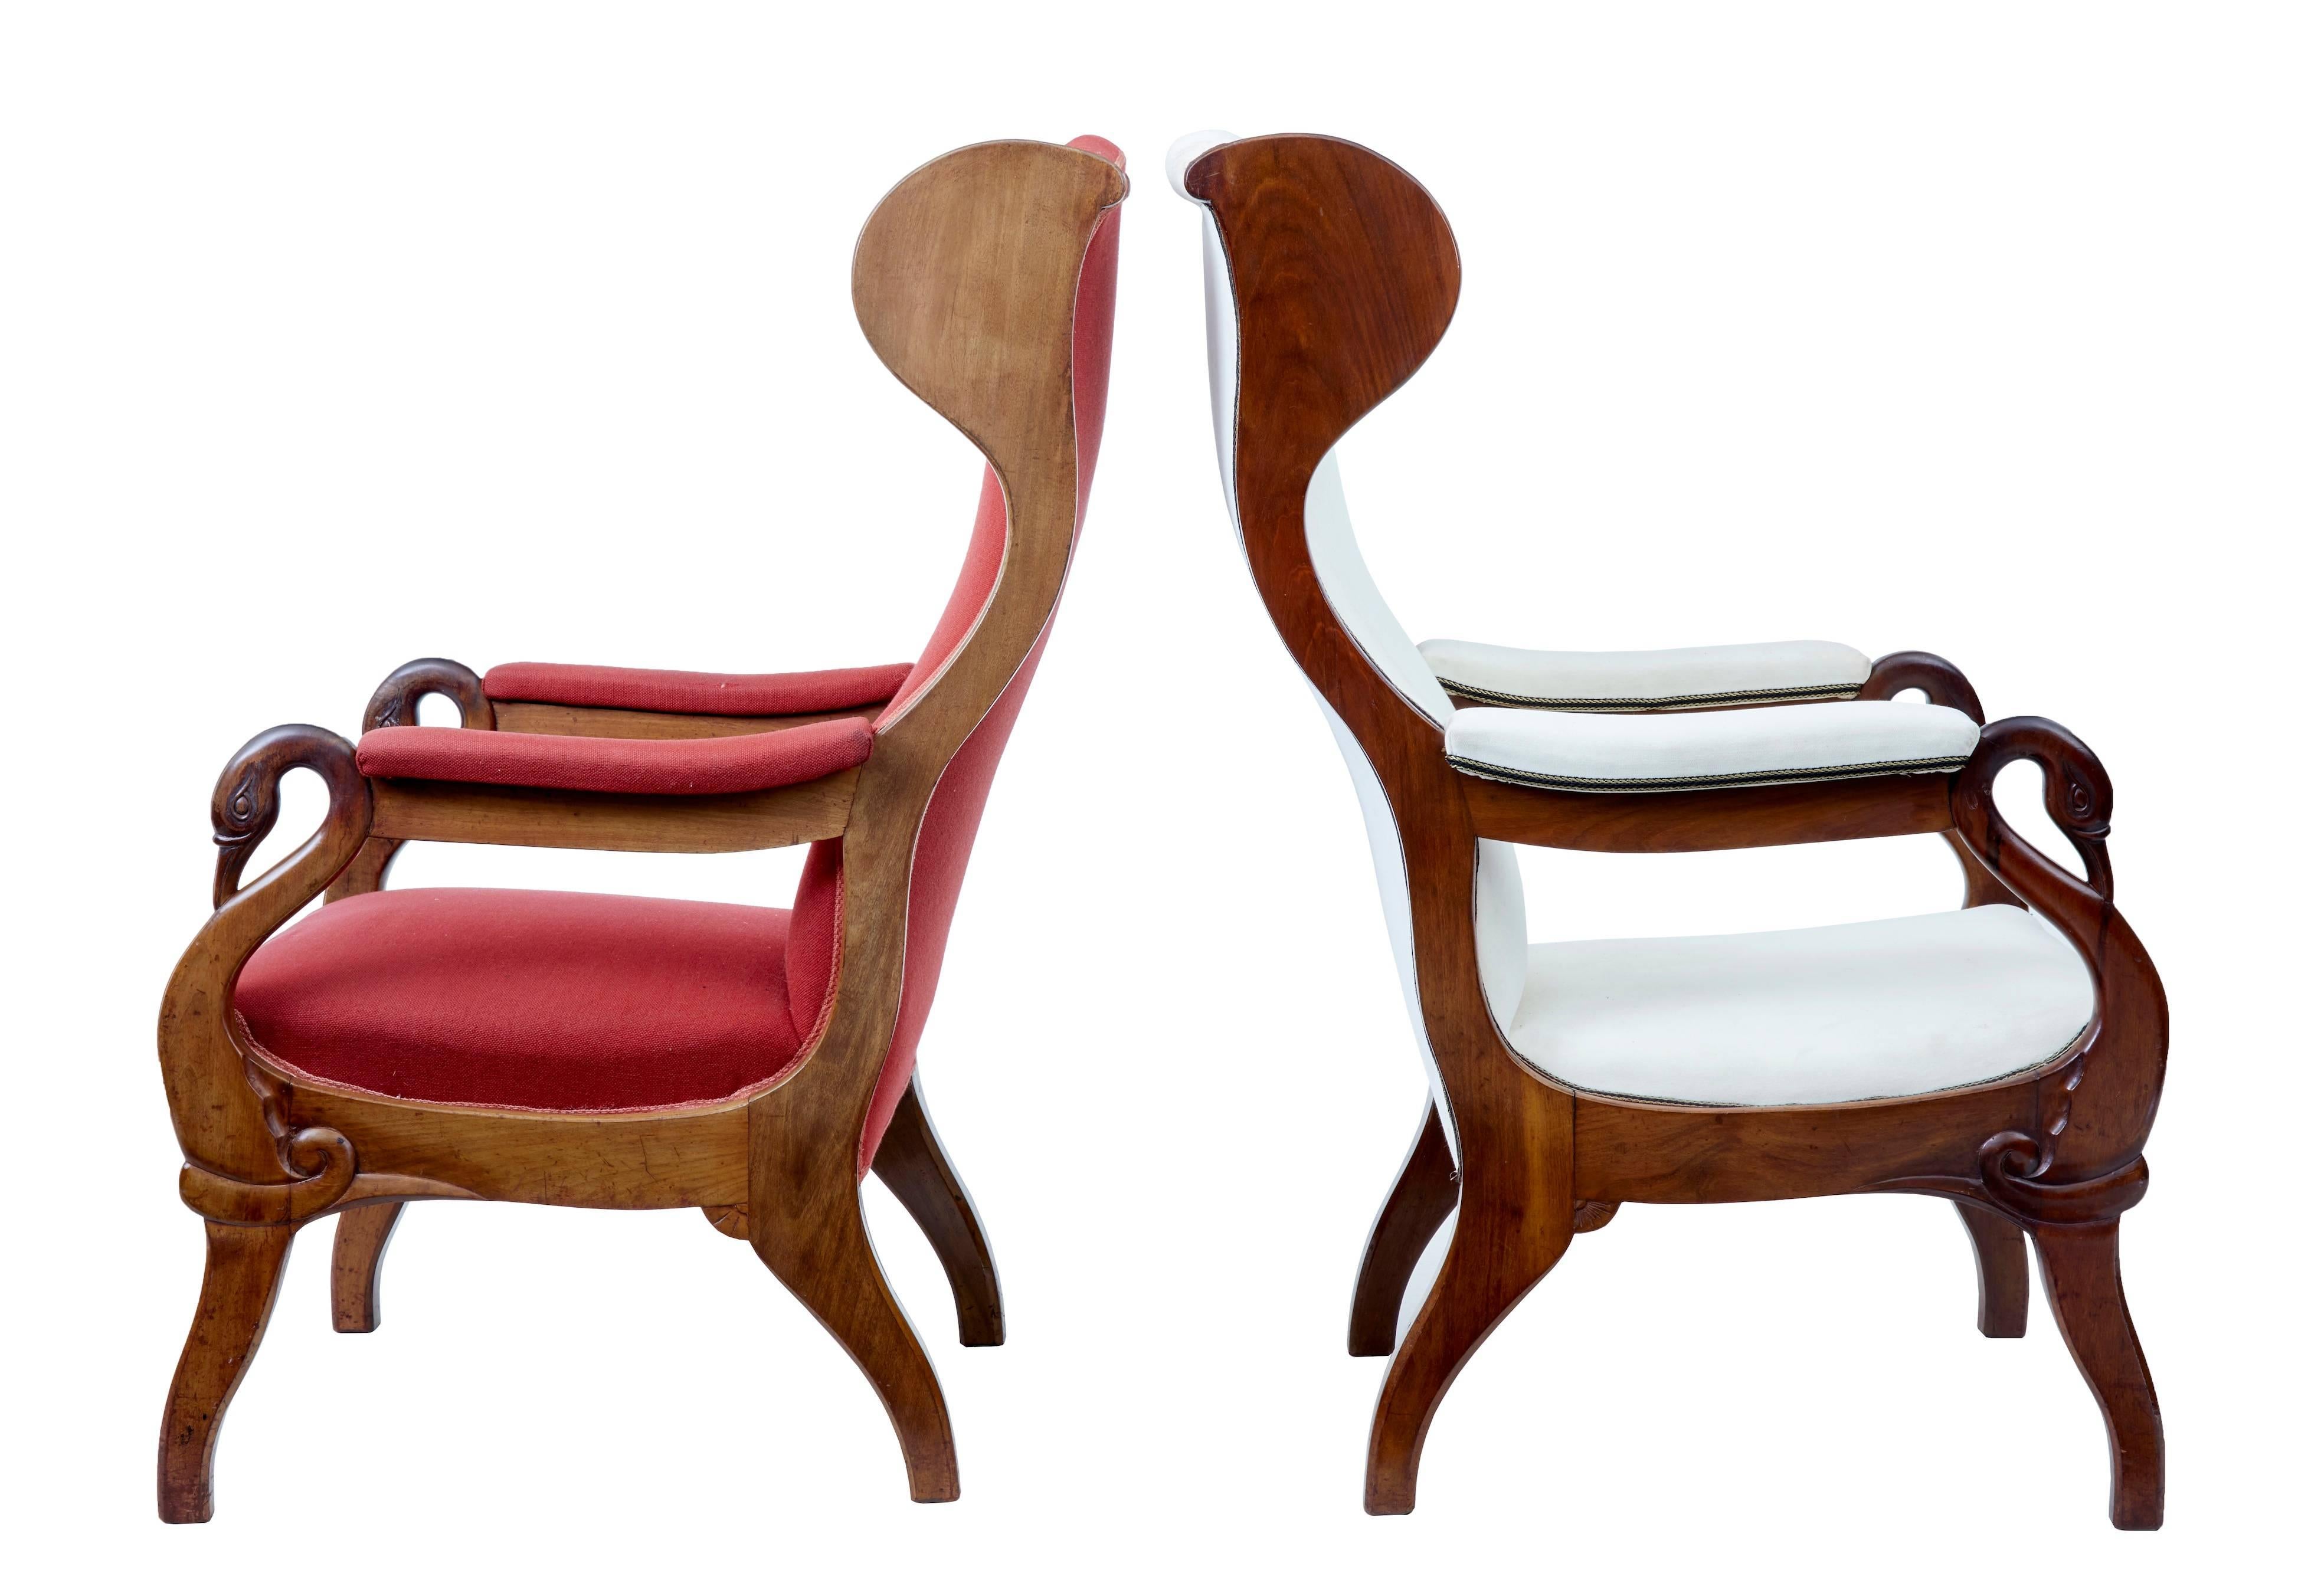 Paire de fauteuils danois en acajou de belle qualité, vers 1880.
Paire de chaises très confortables au design classique.
Dossiers façonnés avec appuie-tête.
Les bras en col de cygne sont magnifiquement sculptés et descendent jusqu'aux pieds